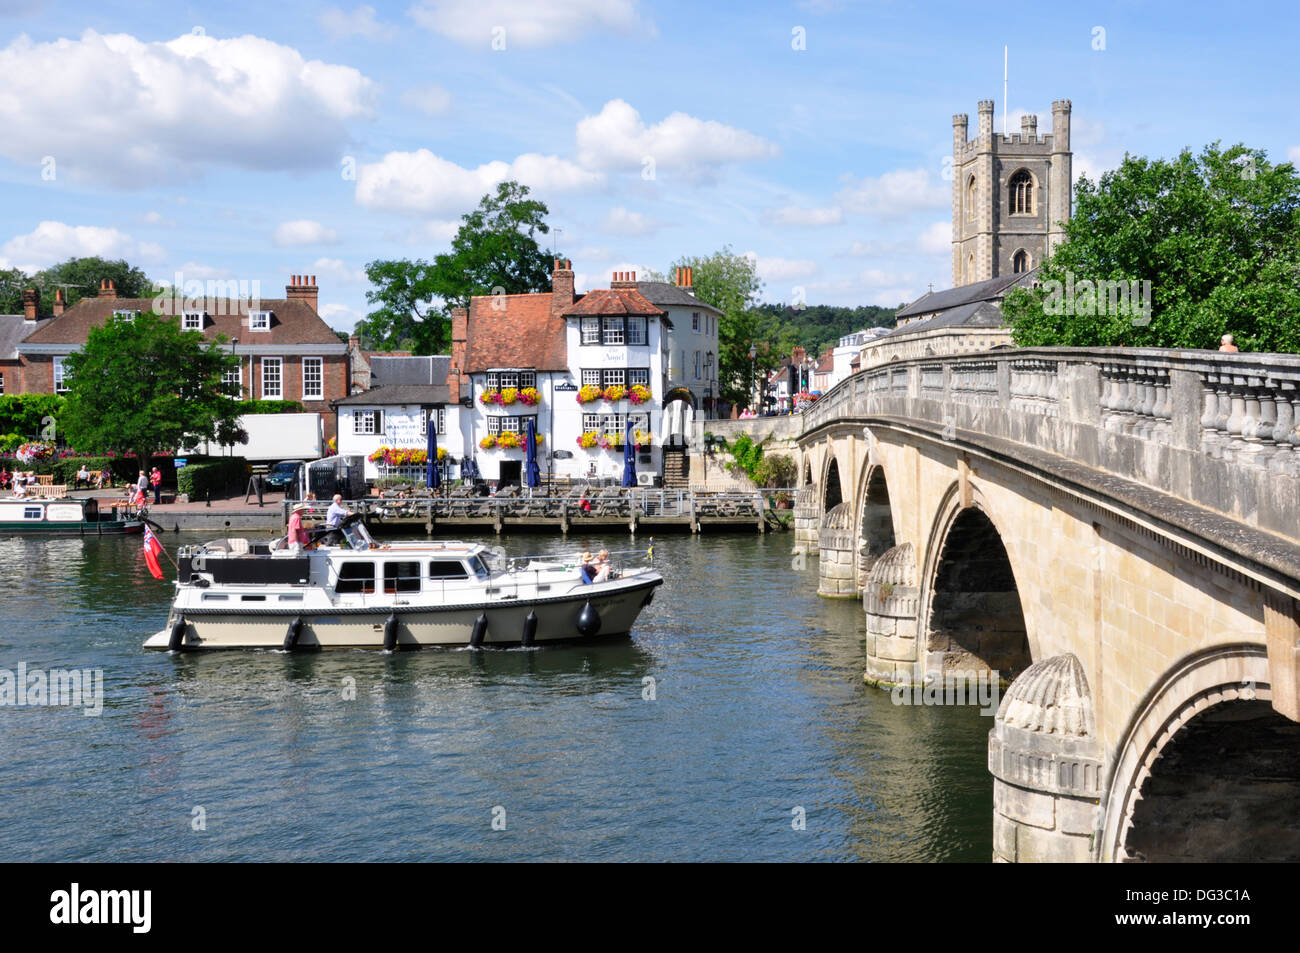 Oxon - Henley on Thames - ver la ciudad puente - Angel Inn - barco acercándose al puente - la luz solar del verano - blue sky Foto de stock